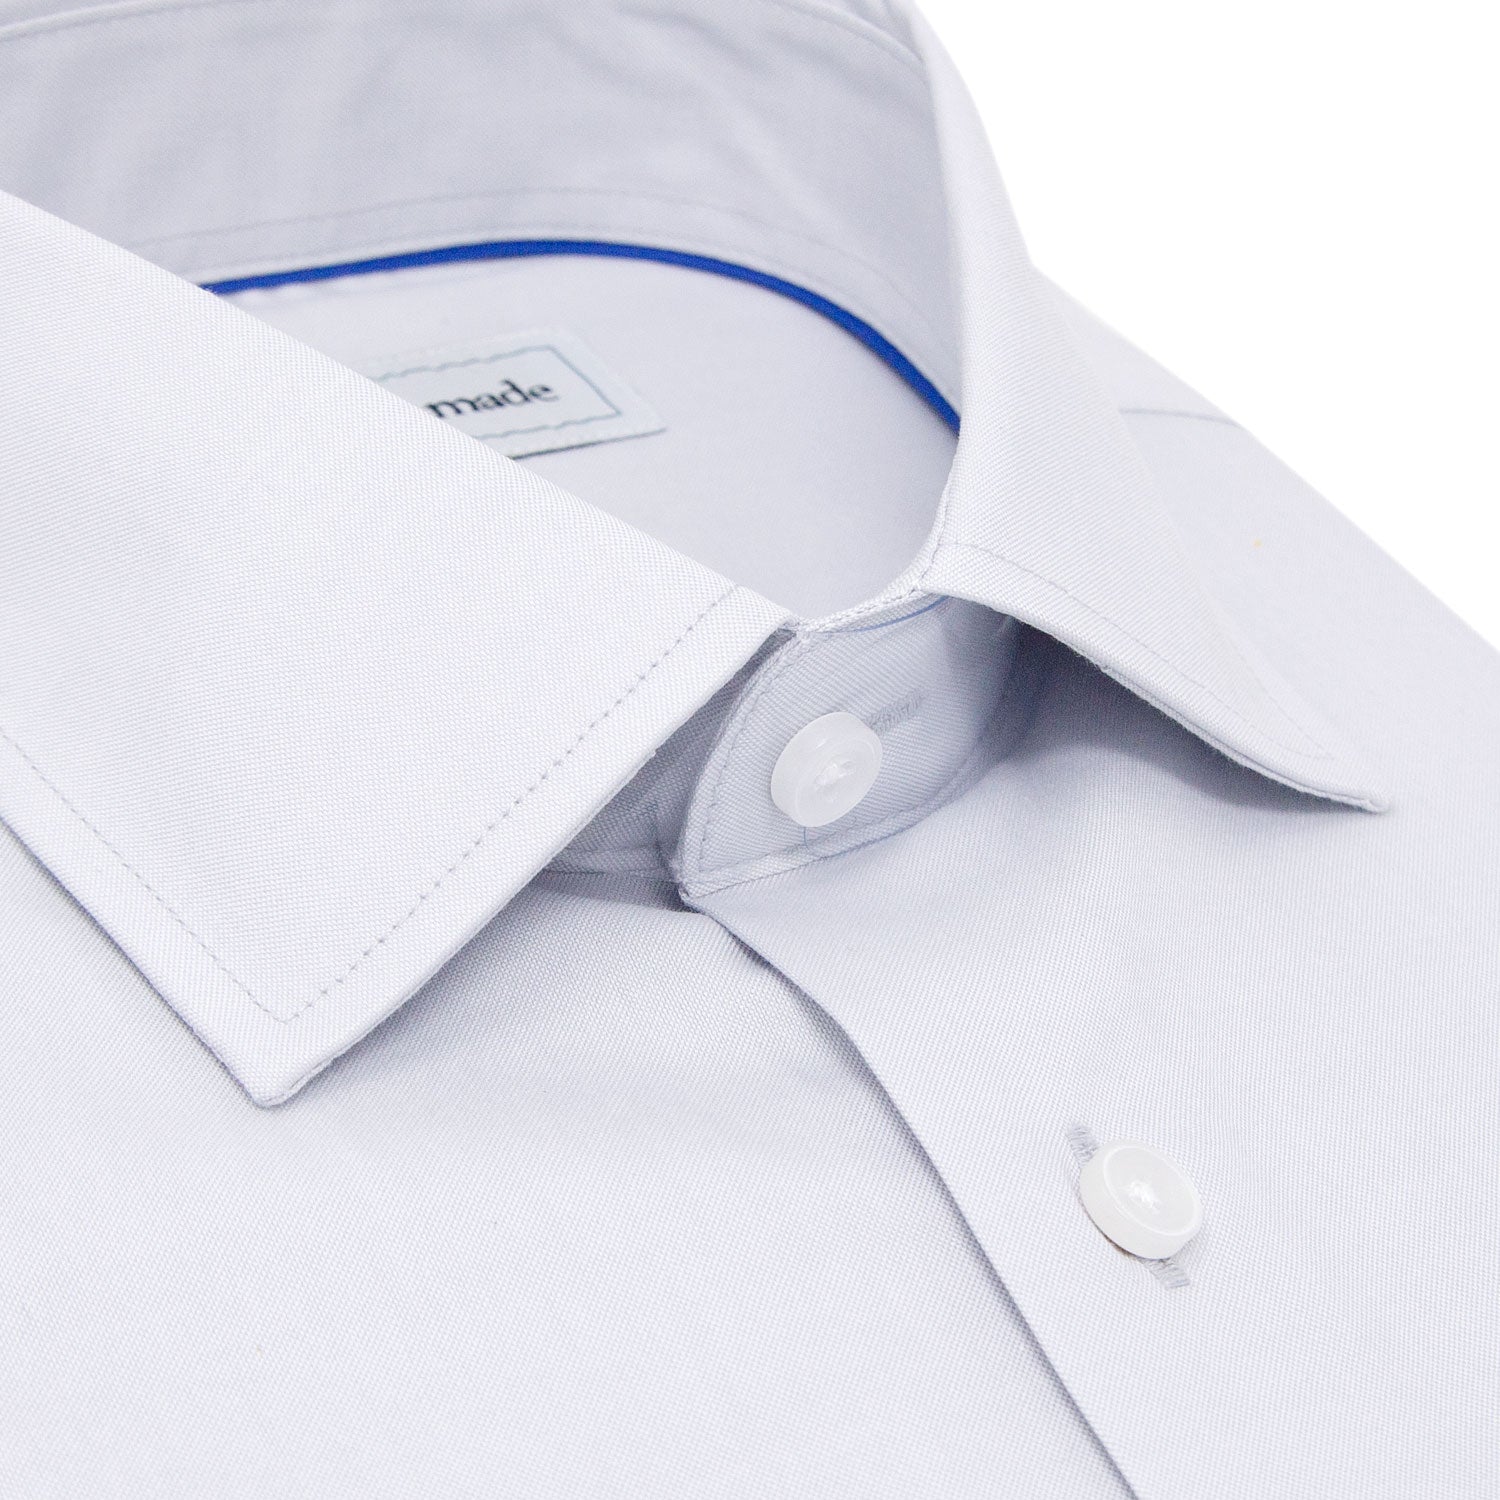 light gray button up shirt closeup of collar for mens shirts